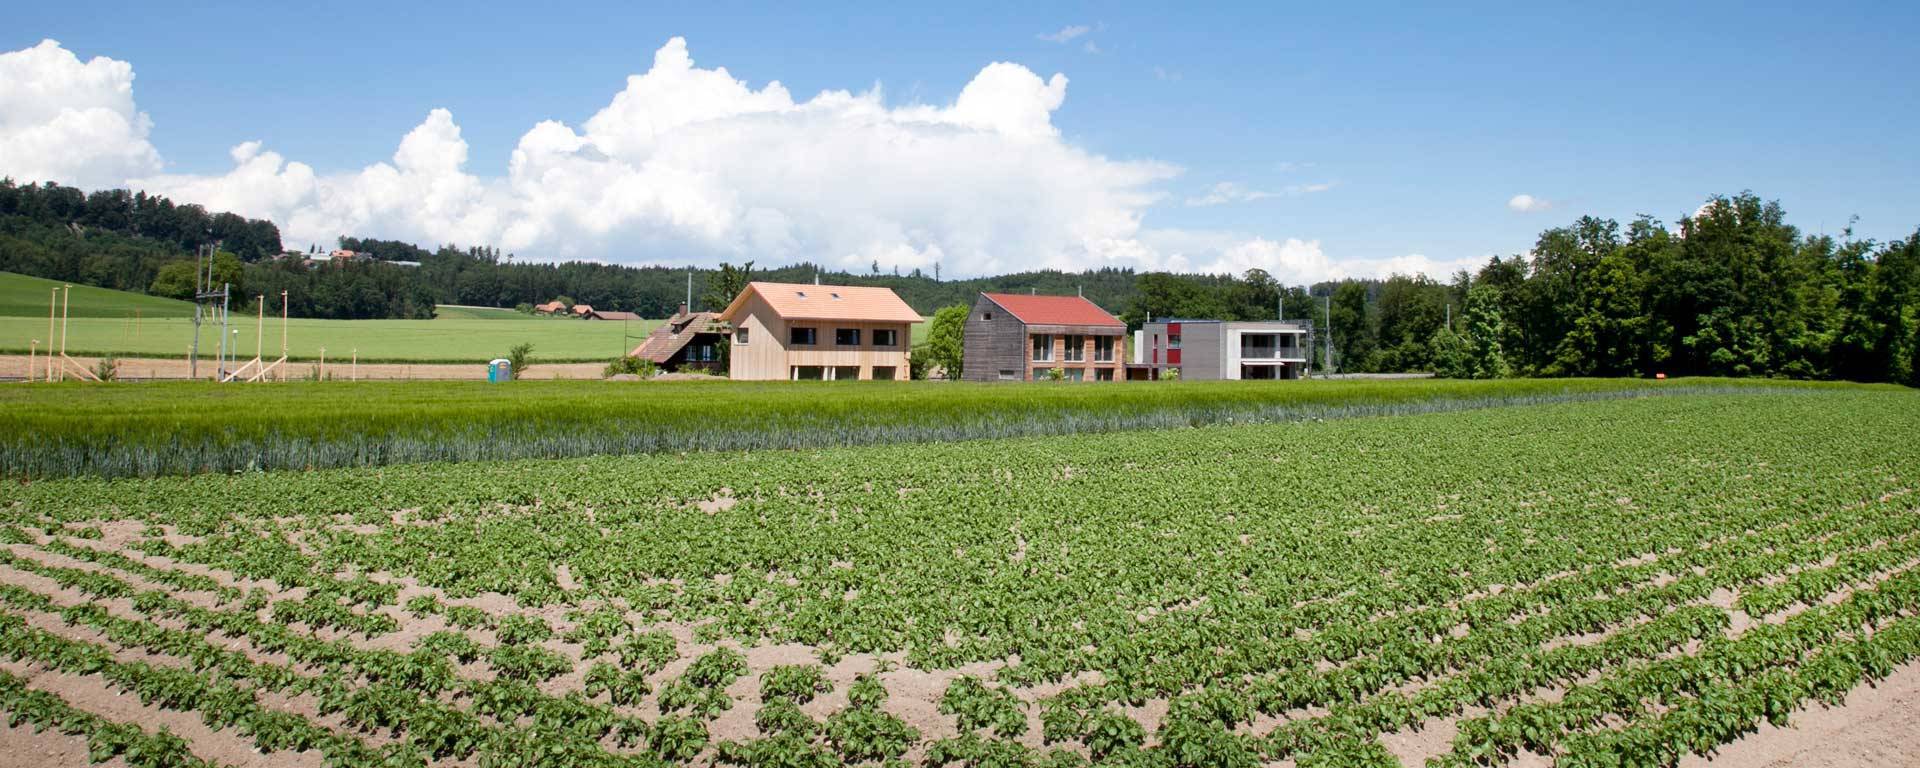 La surface bâtie a pratiquement quadruplé entre 1985 et 2009. Chaque personne en Suisse utilise aujourd’hui plus de 400 m2 de surface habitable, et la tendance va en augmentant.